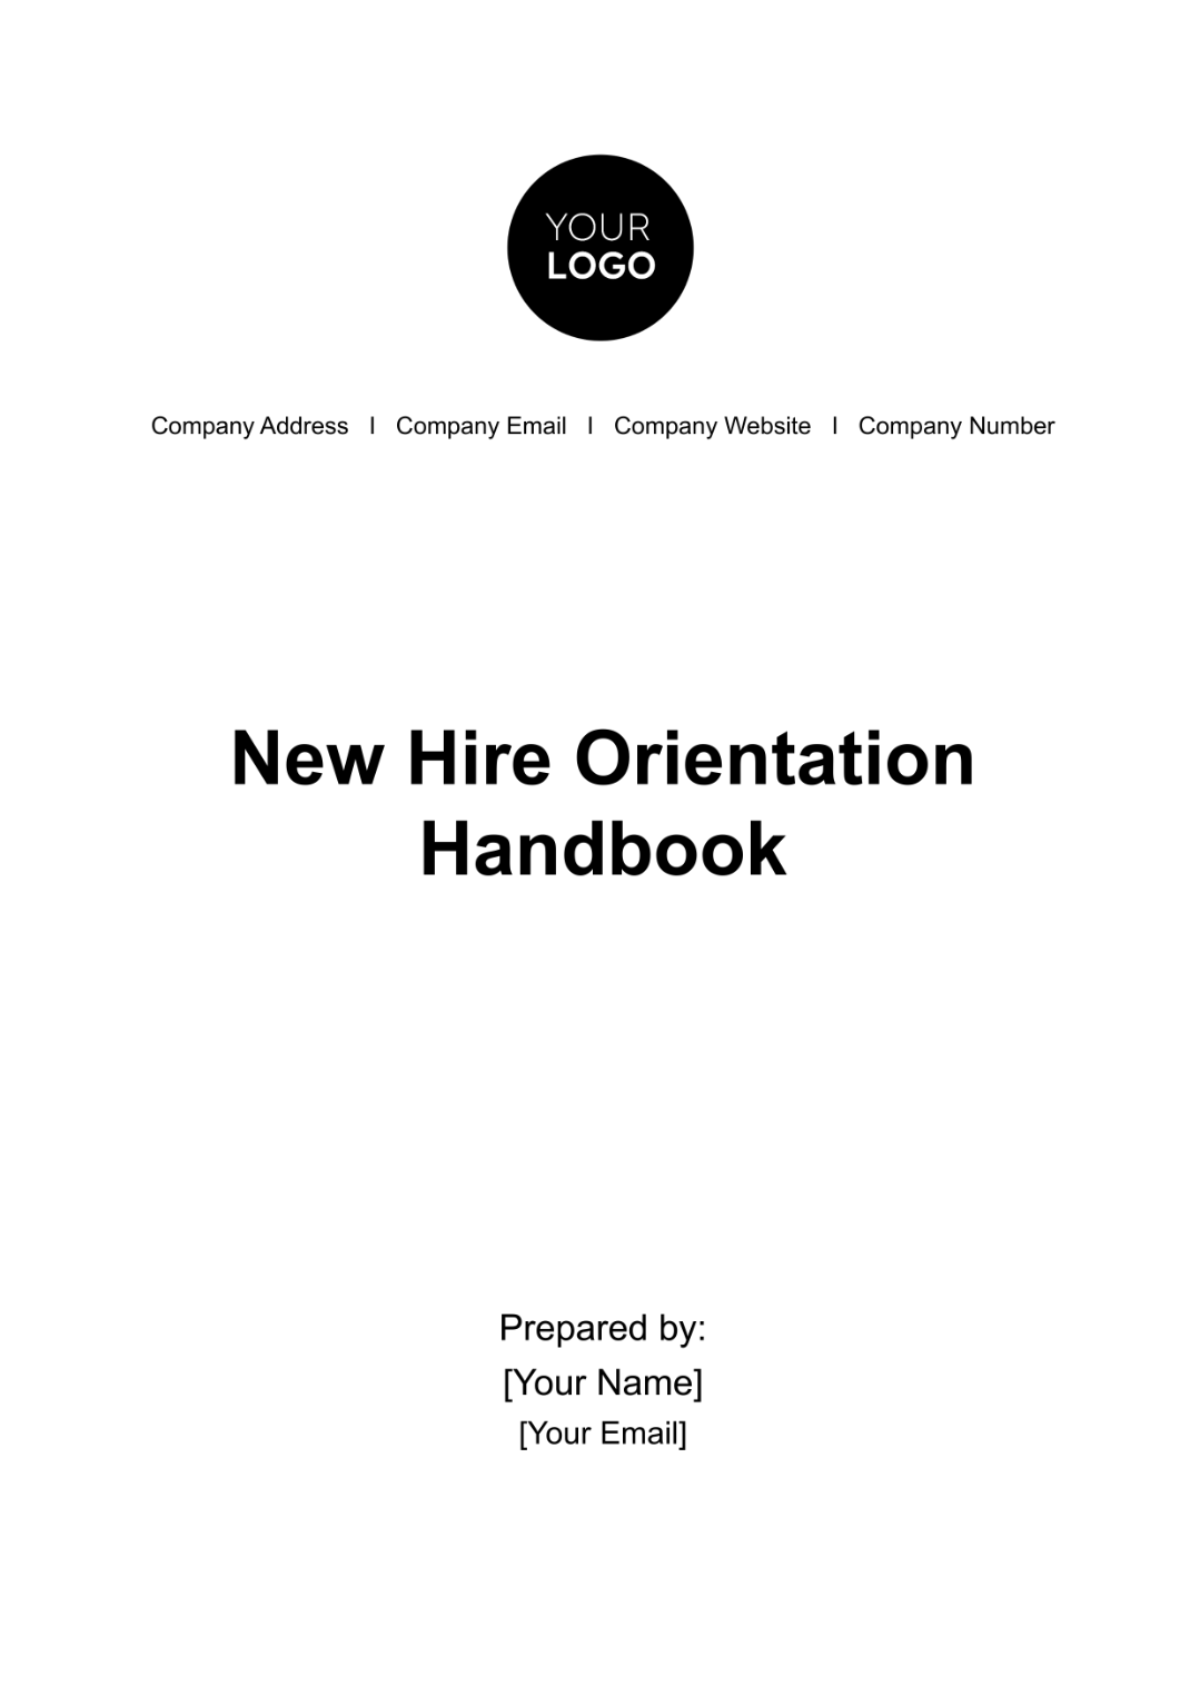 Free New Hire Orientation Handbook HR Template